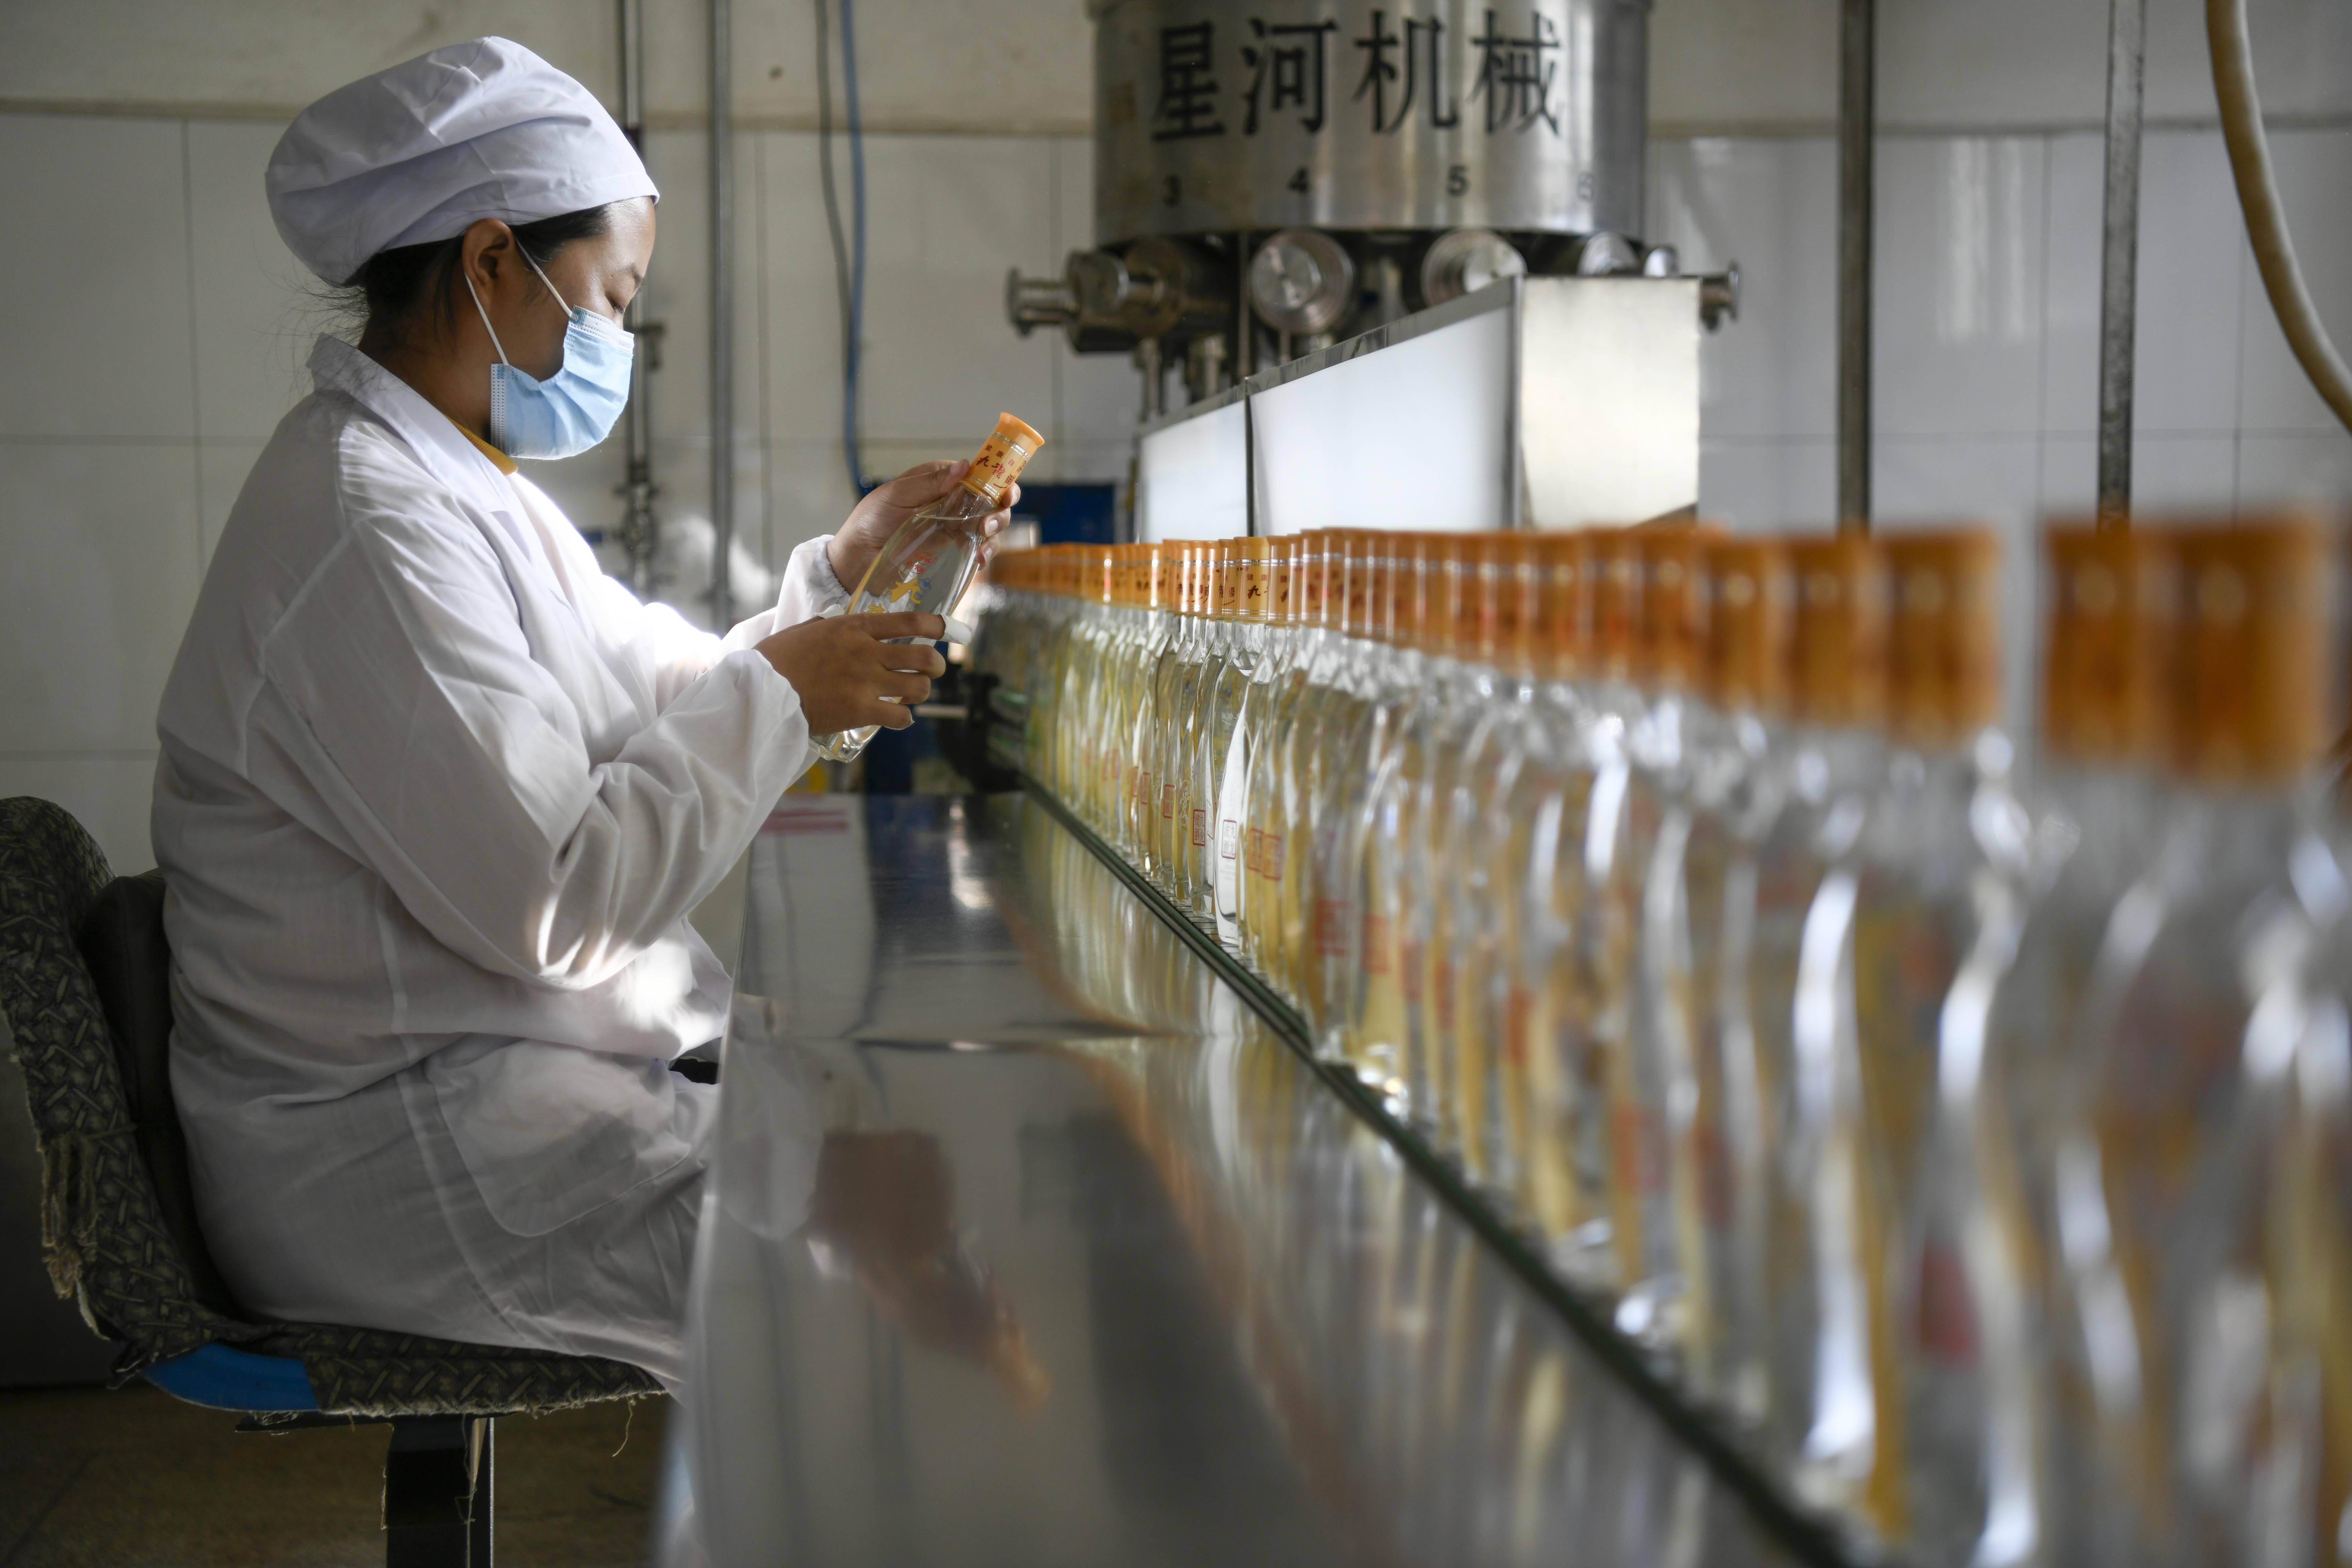 10月23日,在丰宁县一家酿酒企业,工人在酿酒车间查看酒的品质